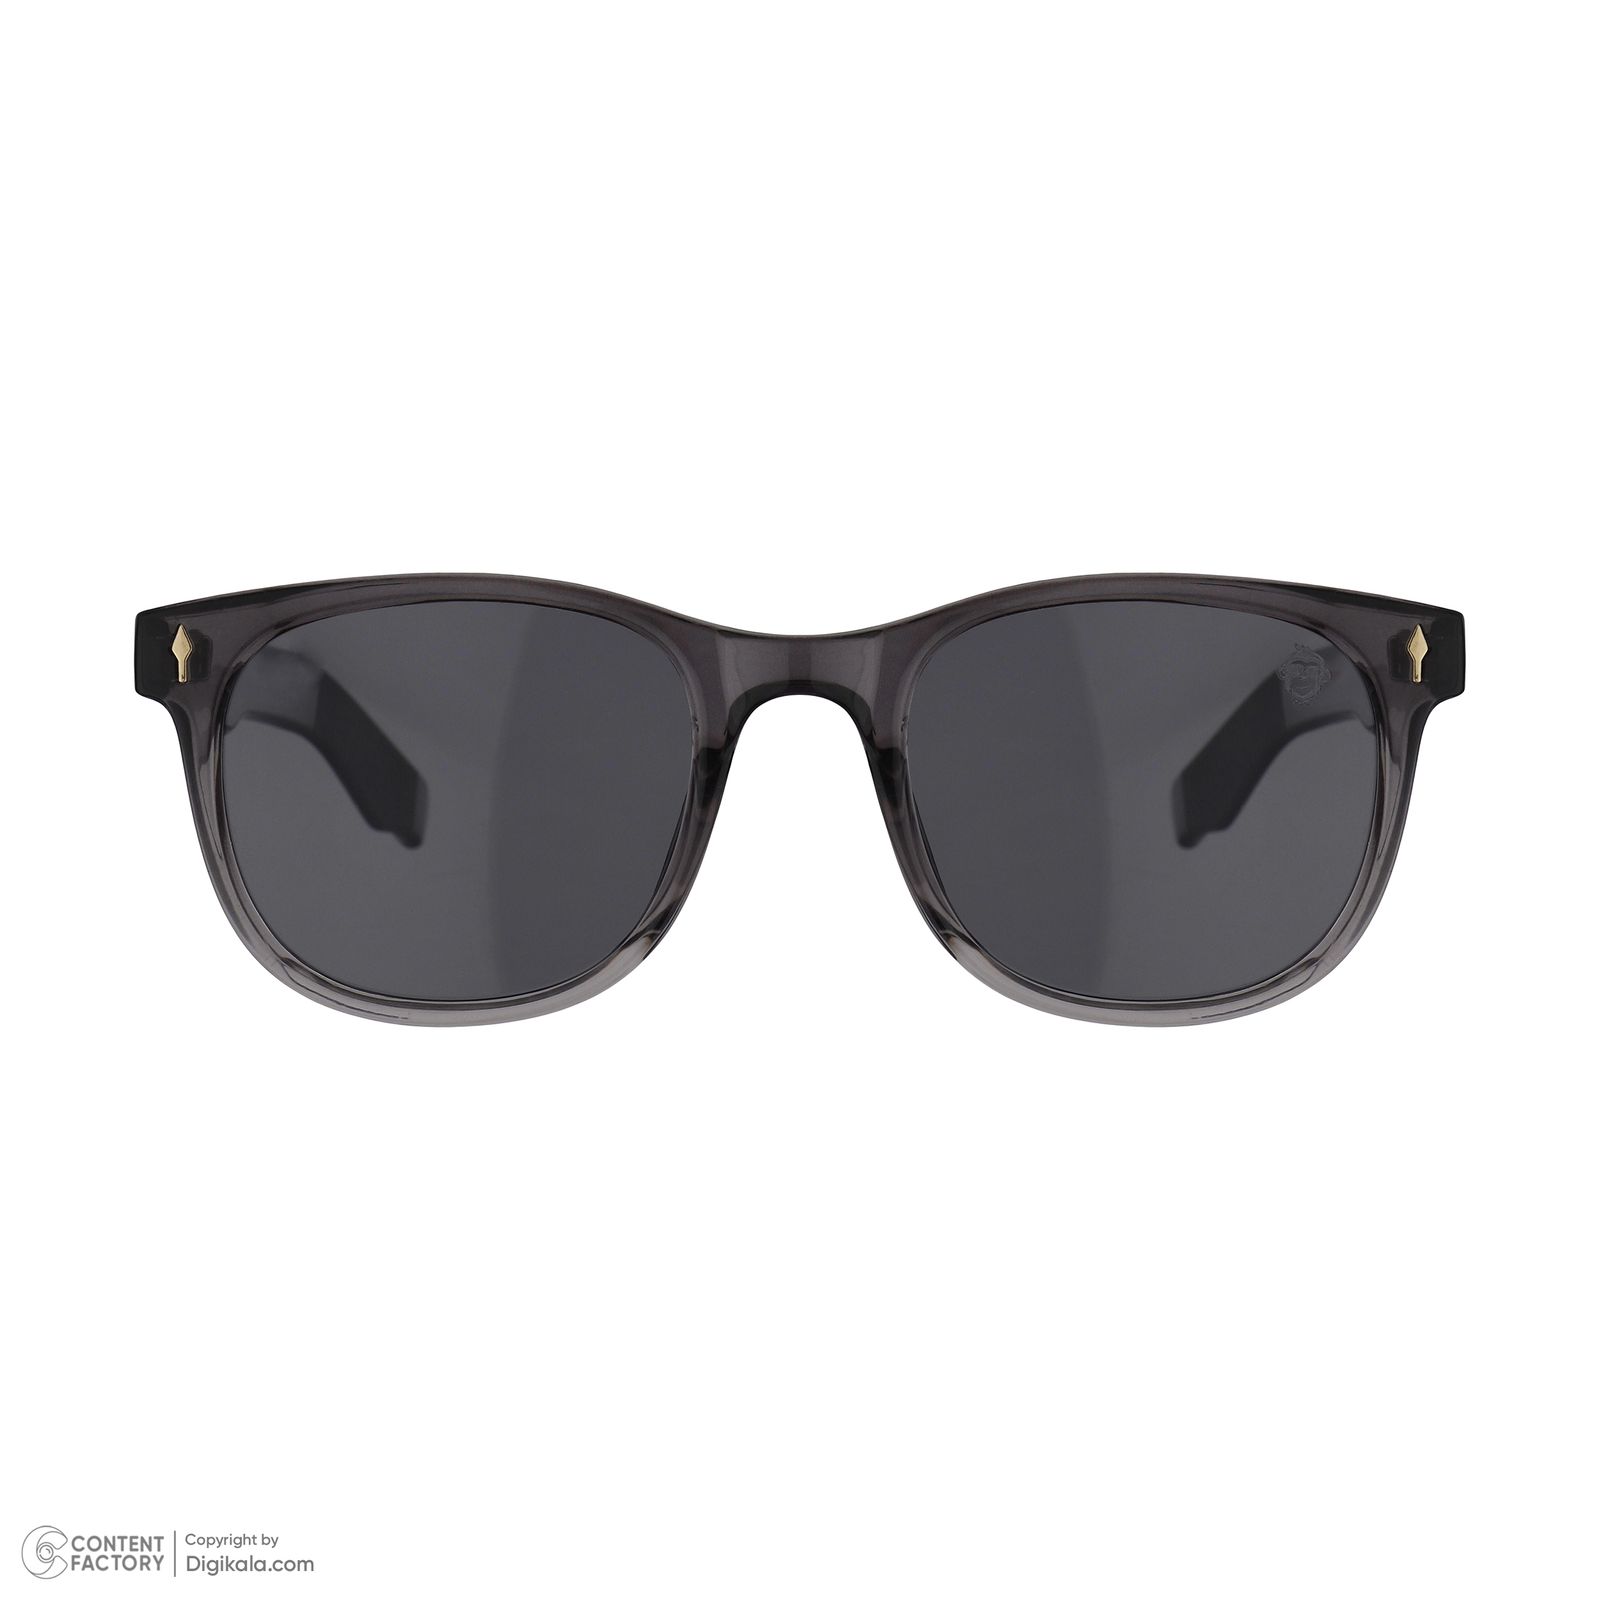 عینک آفتابی مستر مانکی مدل 6014 gr -  - 2